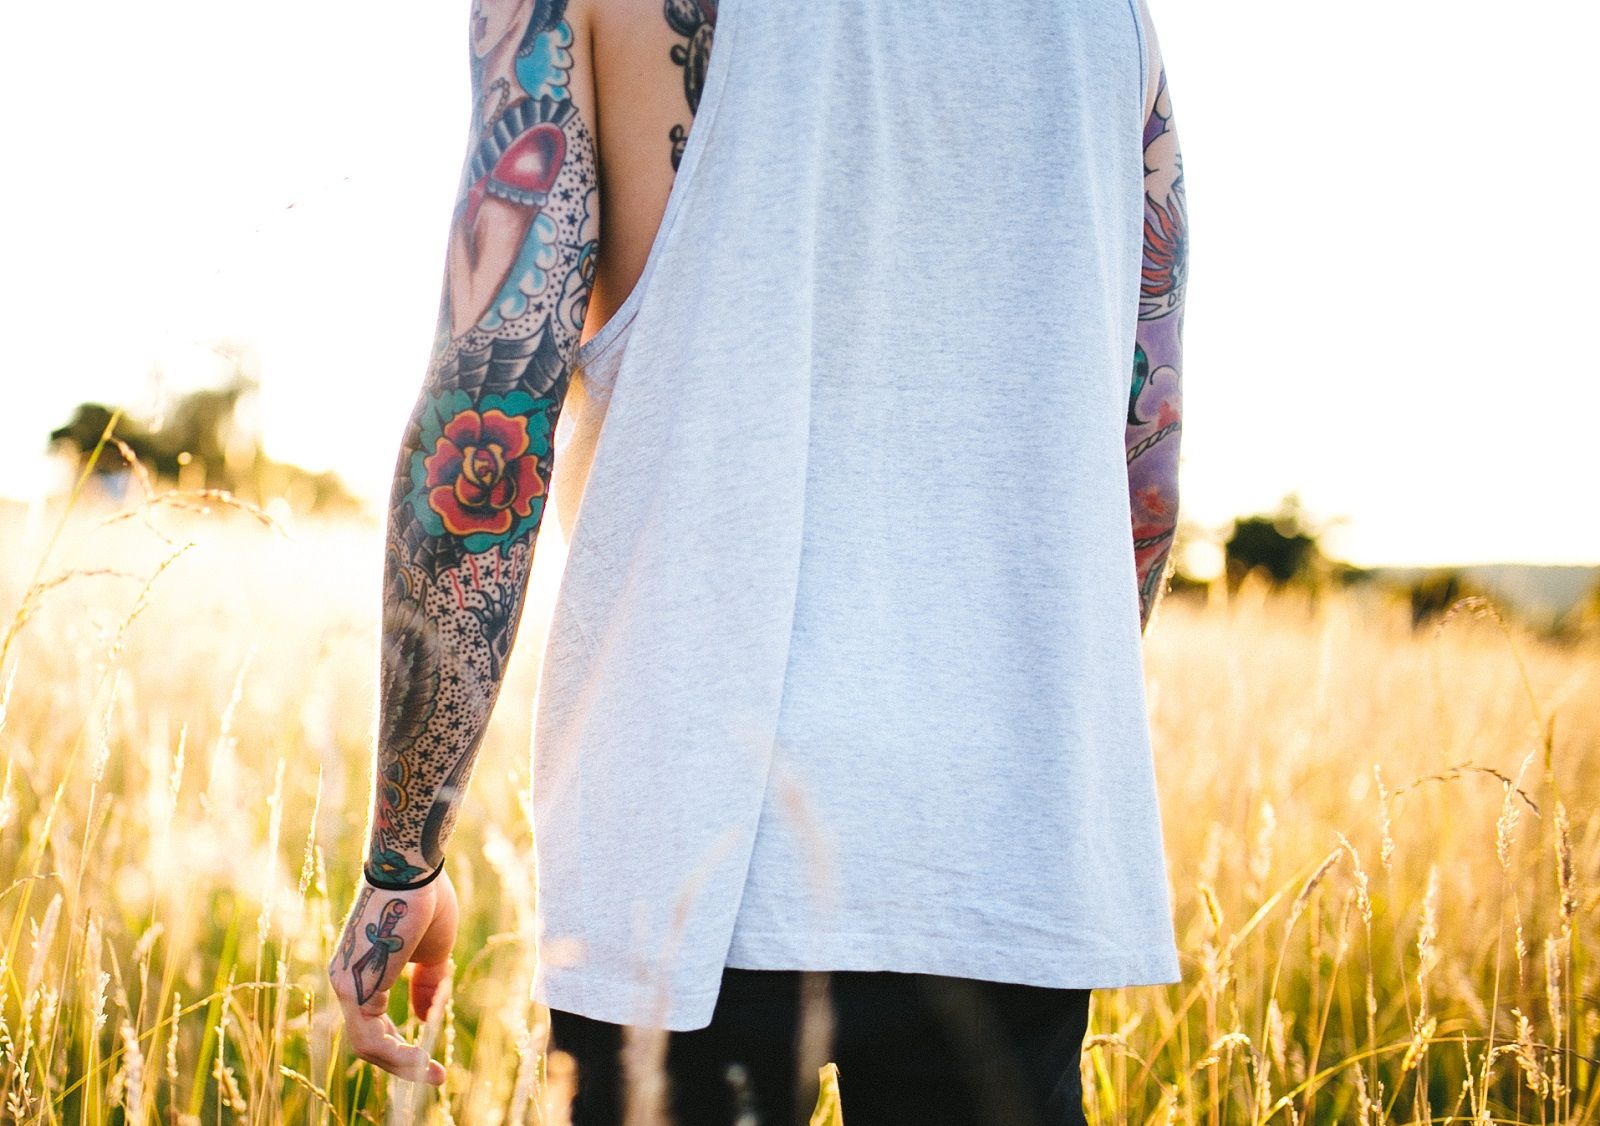 Cosa fare con un tatuaggio che si spella?